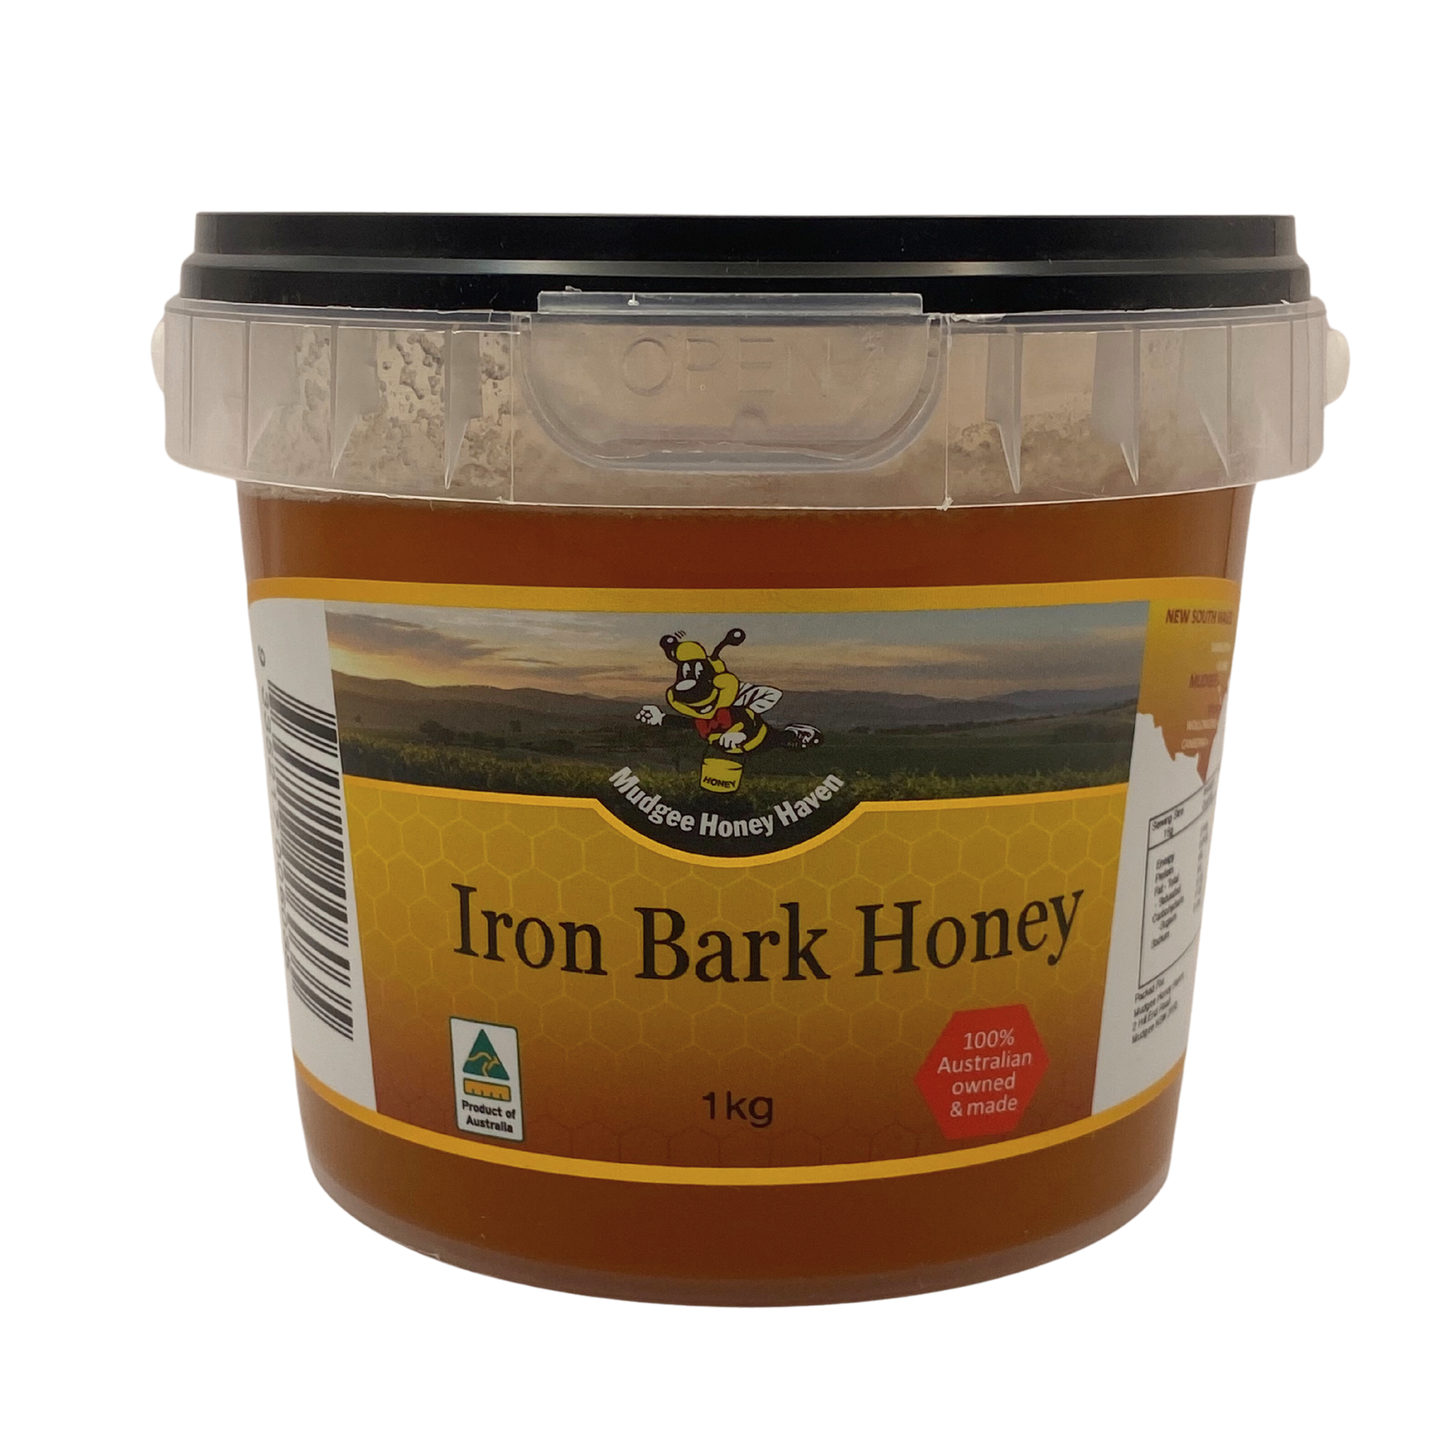 Mudgee Honey Haven - Iron Bark 1kg